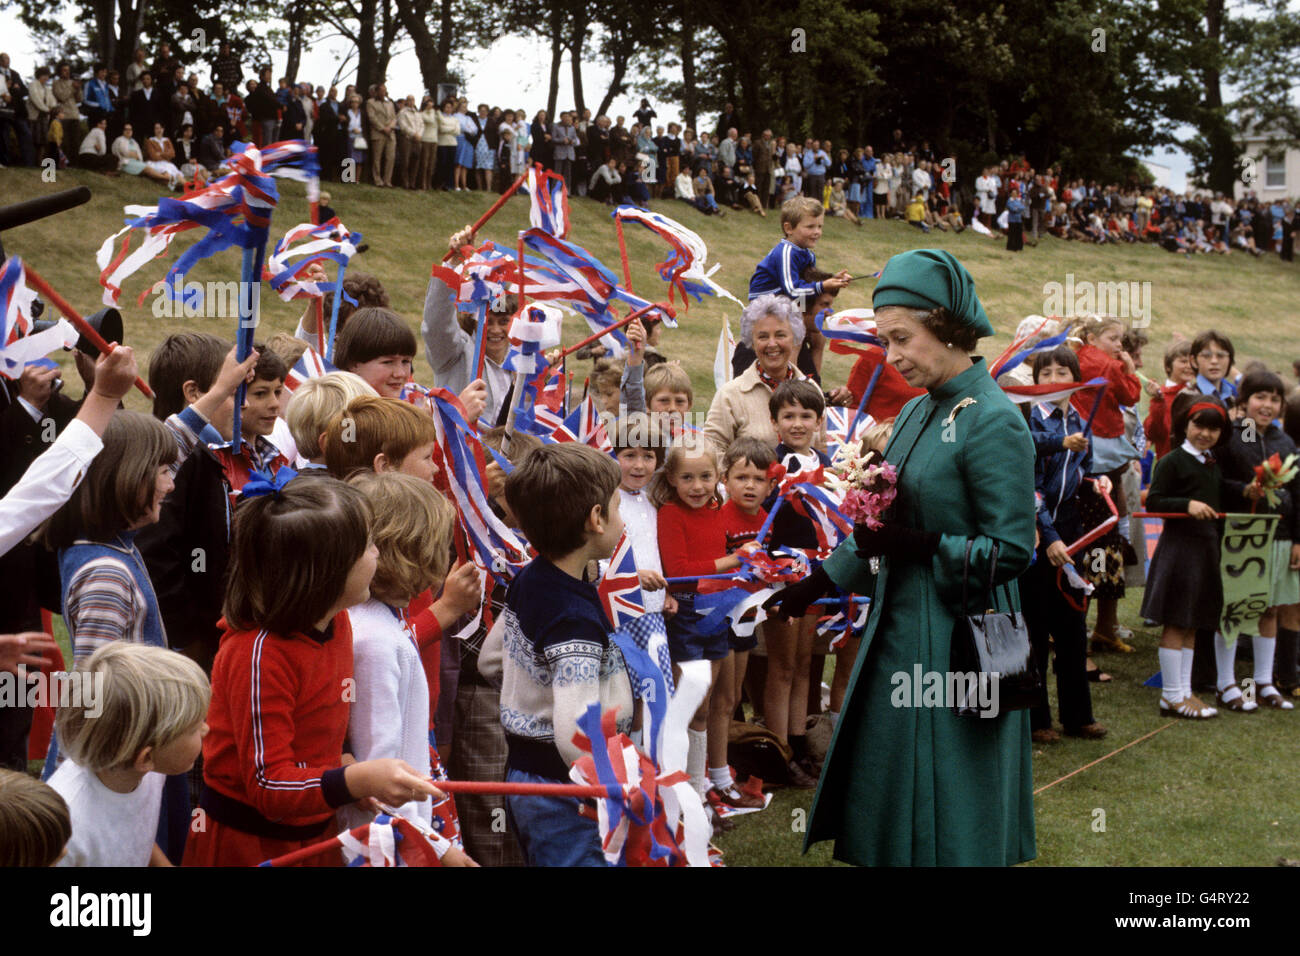 La reine Elizabeth II lors d'un rassemblement d'écoliers à Grainville, Saint Sauveur, alors qu'elle et le duc d'Édimbourg visitaient l'île de Jersey, îles Anglo-Normandes. Banque D'Images